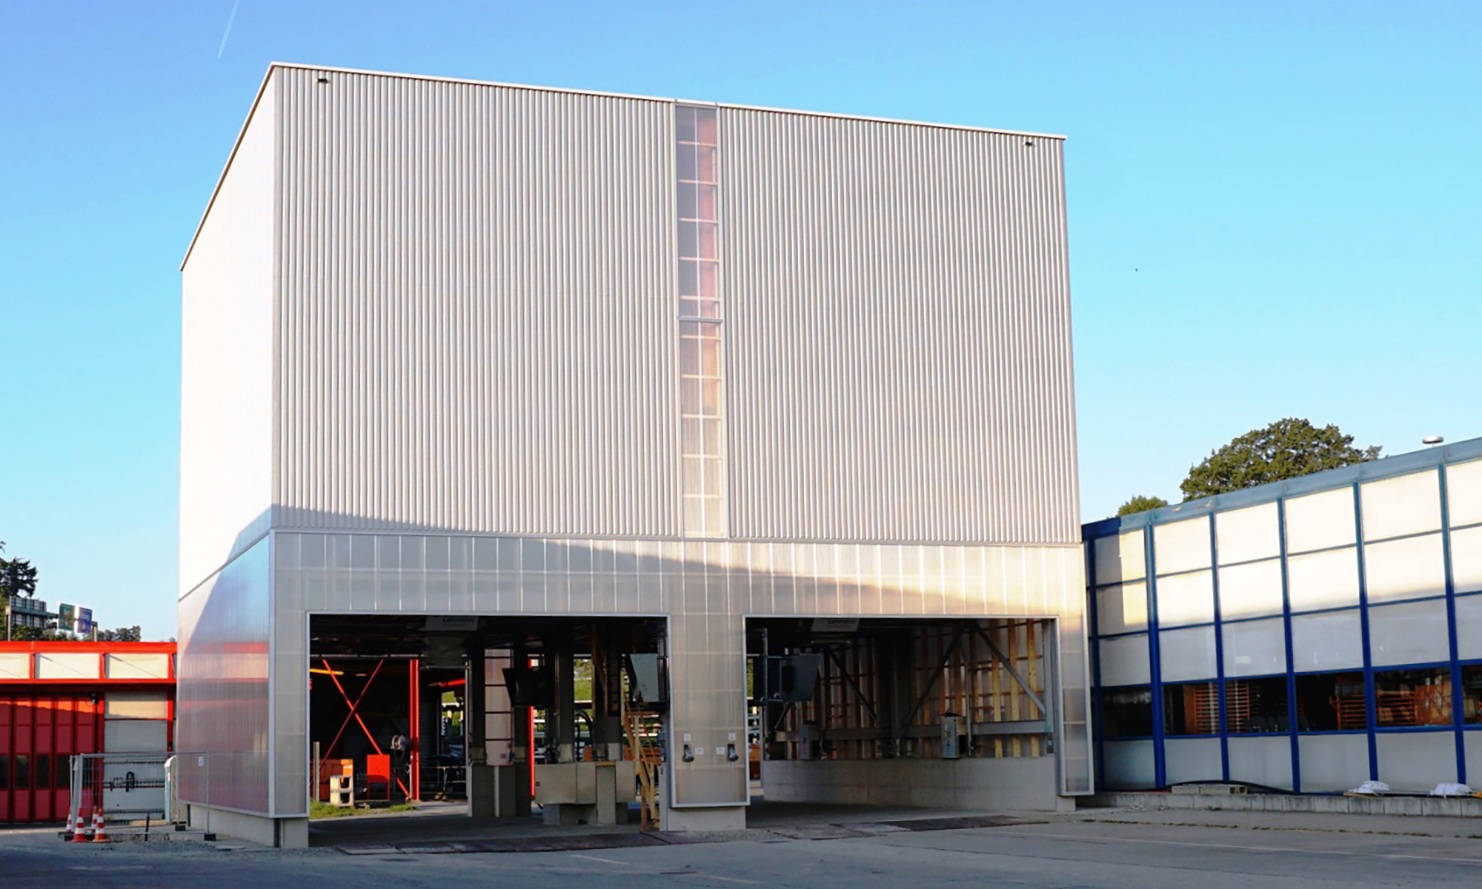 Installation de silo modulaires d'un volume de 1'600m3 pour les matériaux d'épandage à Fribourg